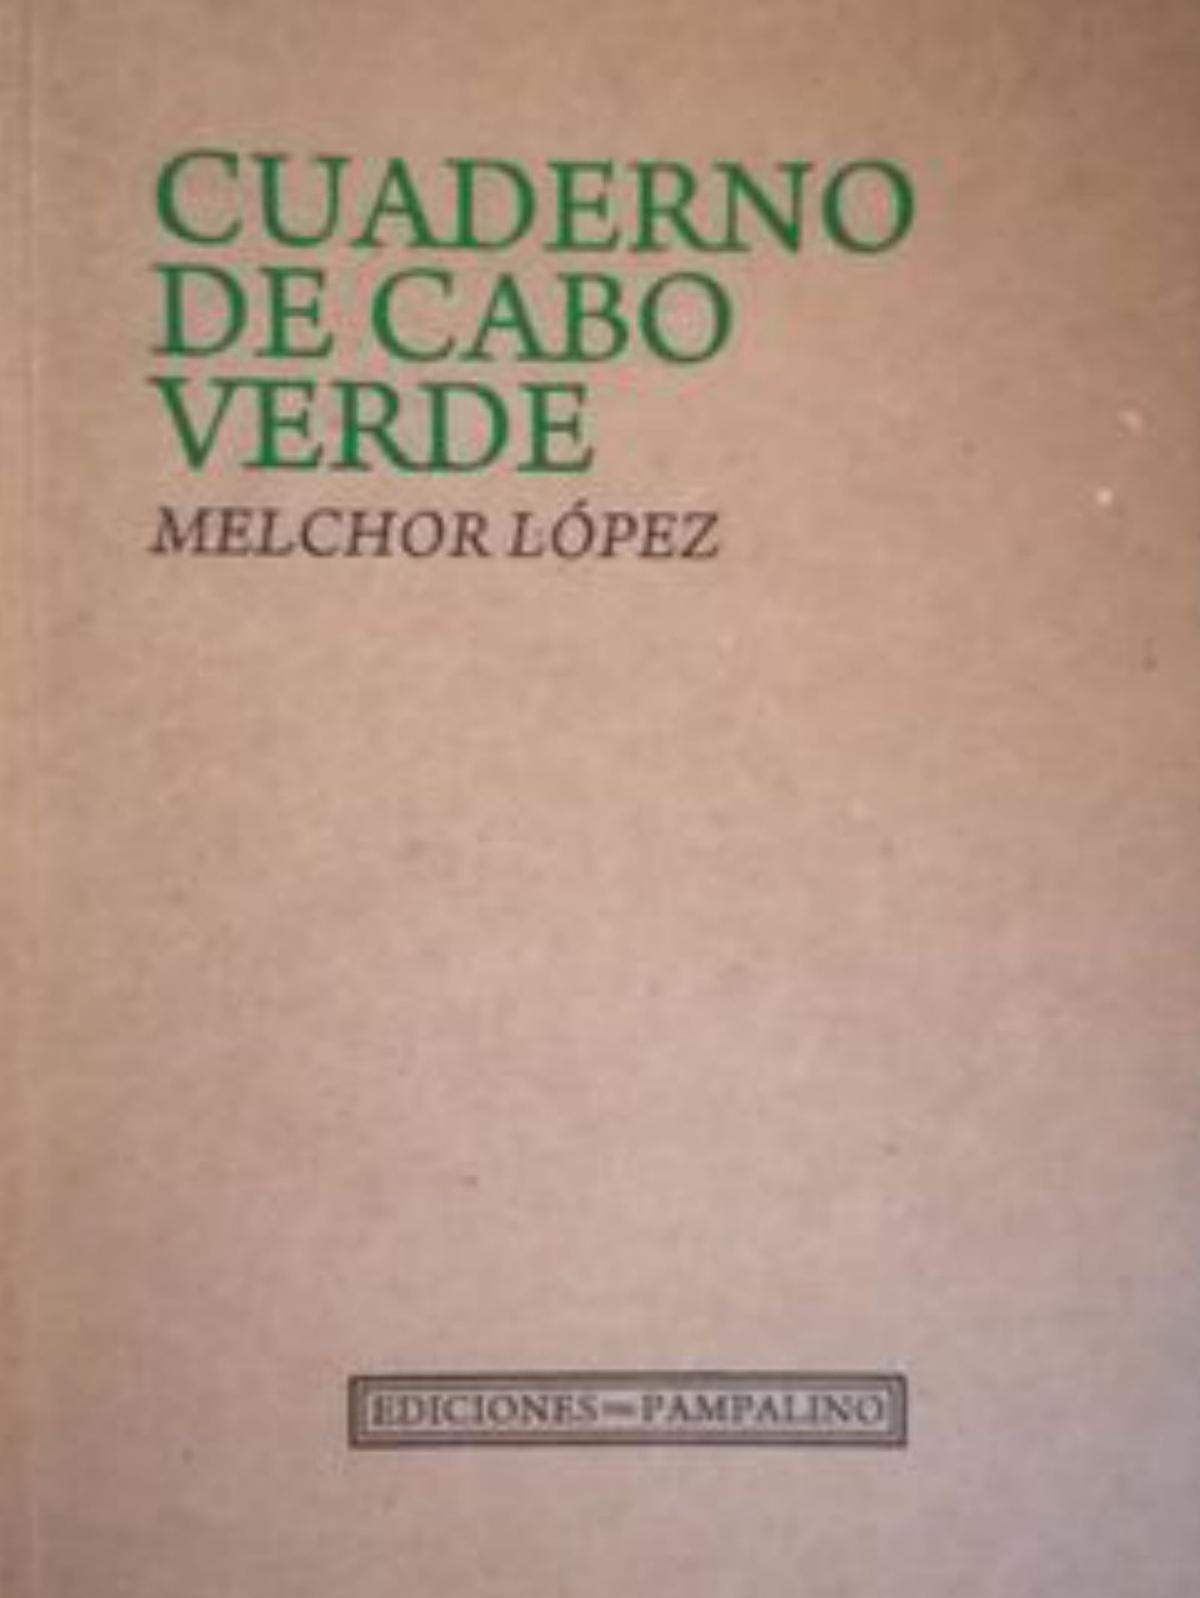 Melchor López, la otredad insular